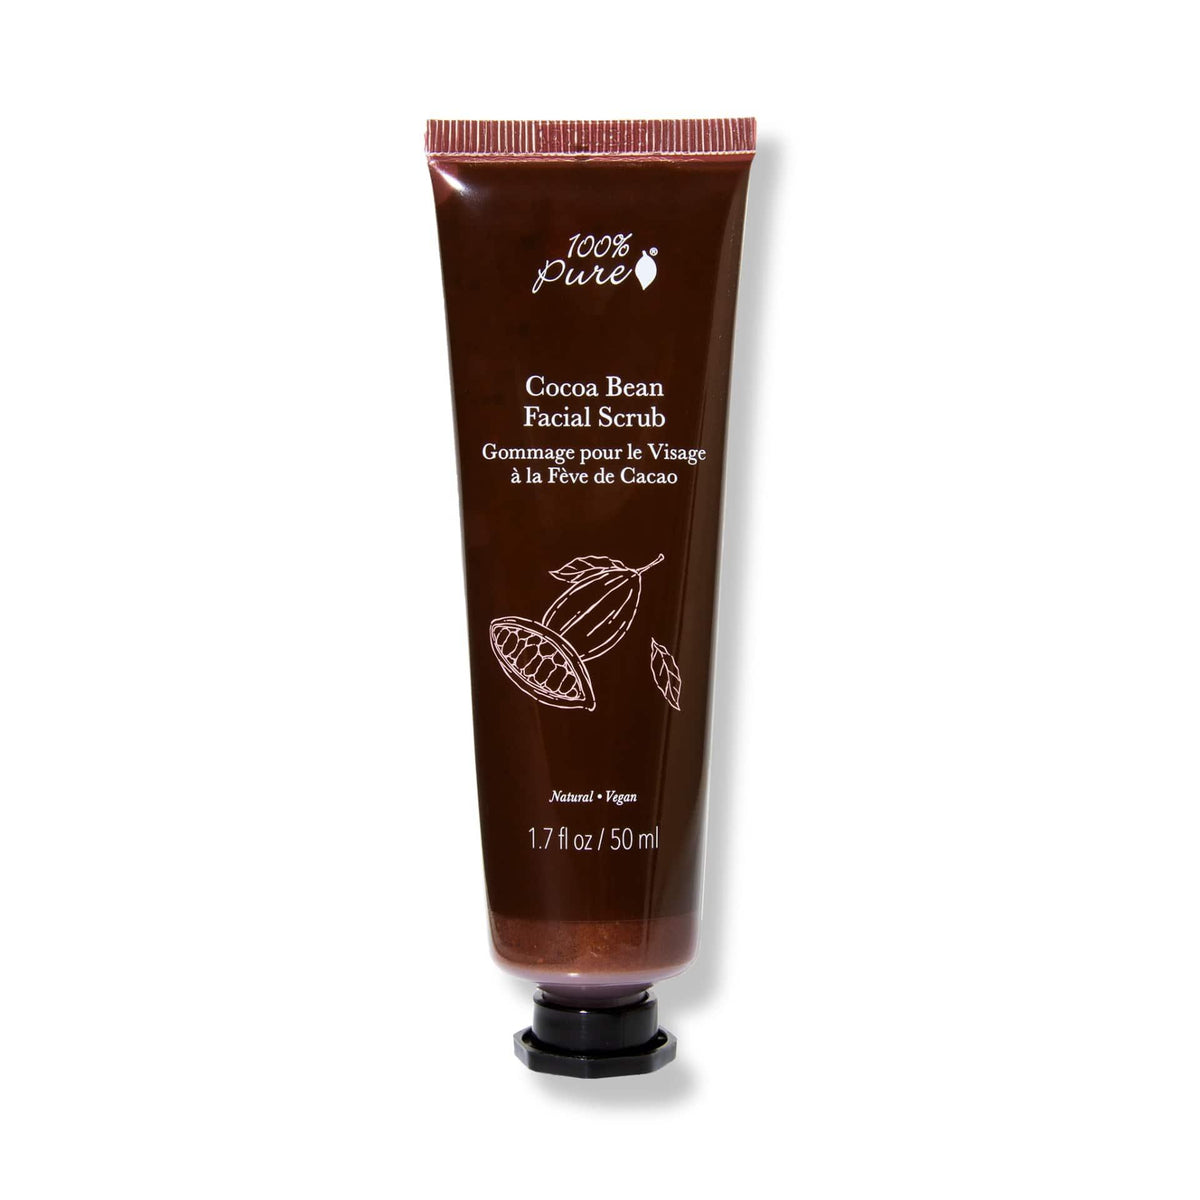 Cocoa Bean Facial Scrub - 100% PURE MX